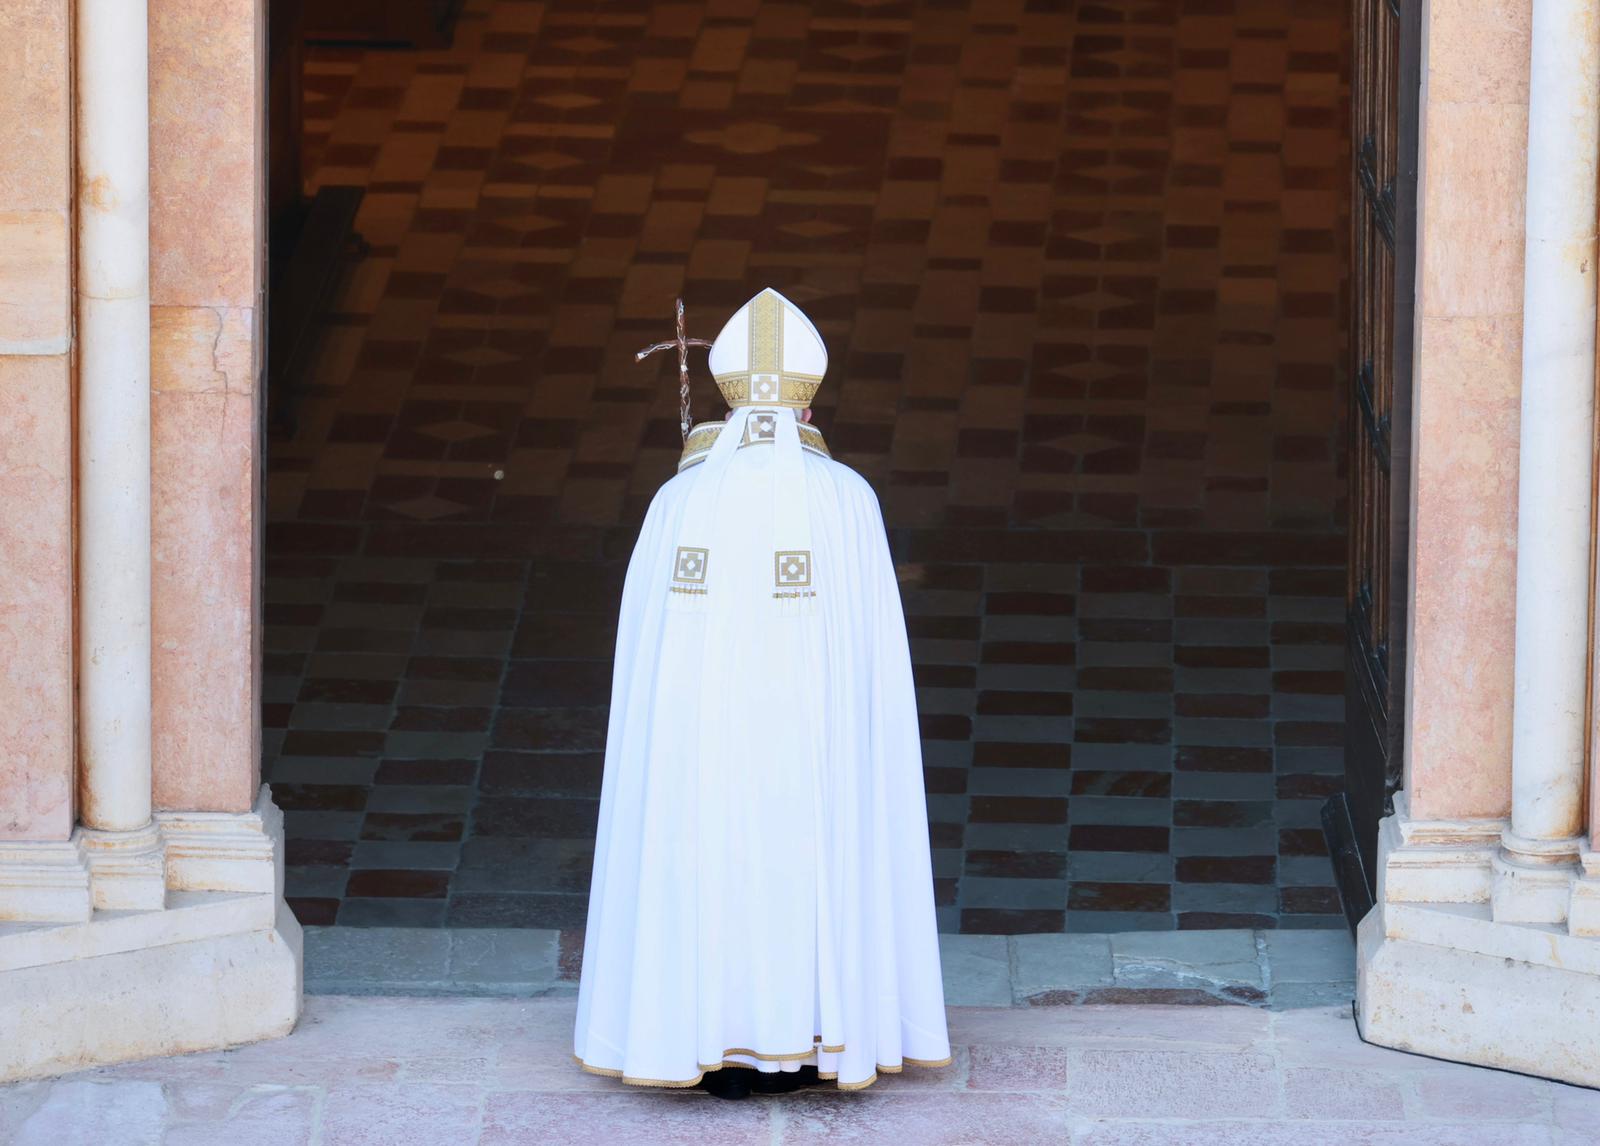 البابا فرنسيس يفتح الباب المقدّس في مدينة لاكويلا